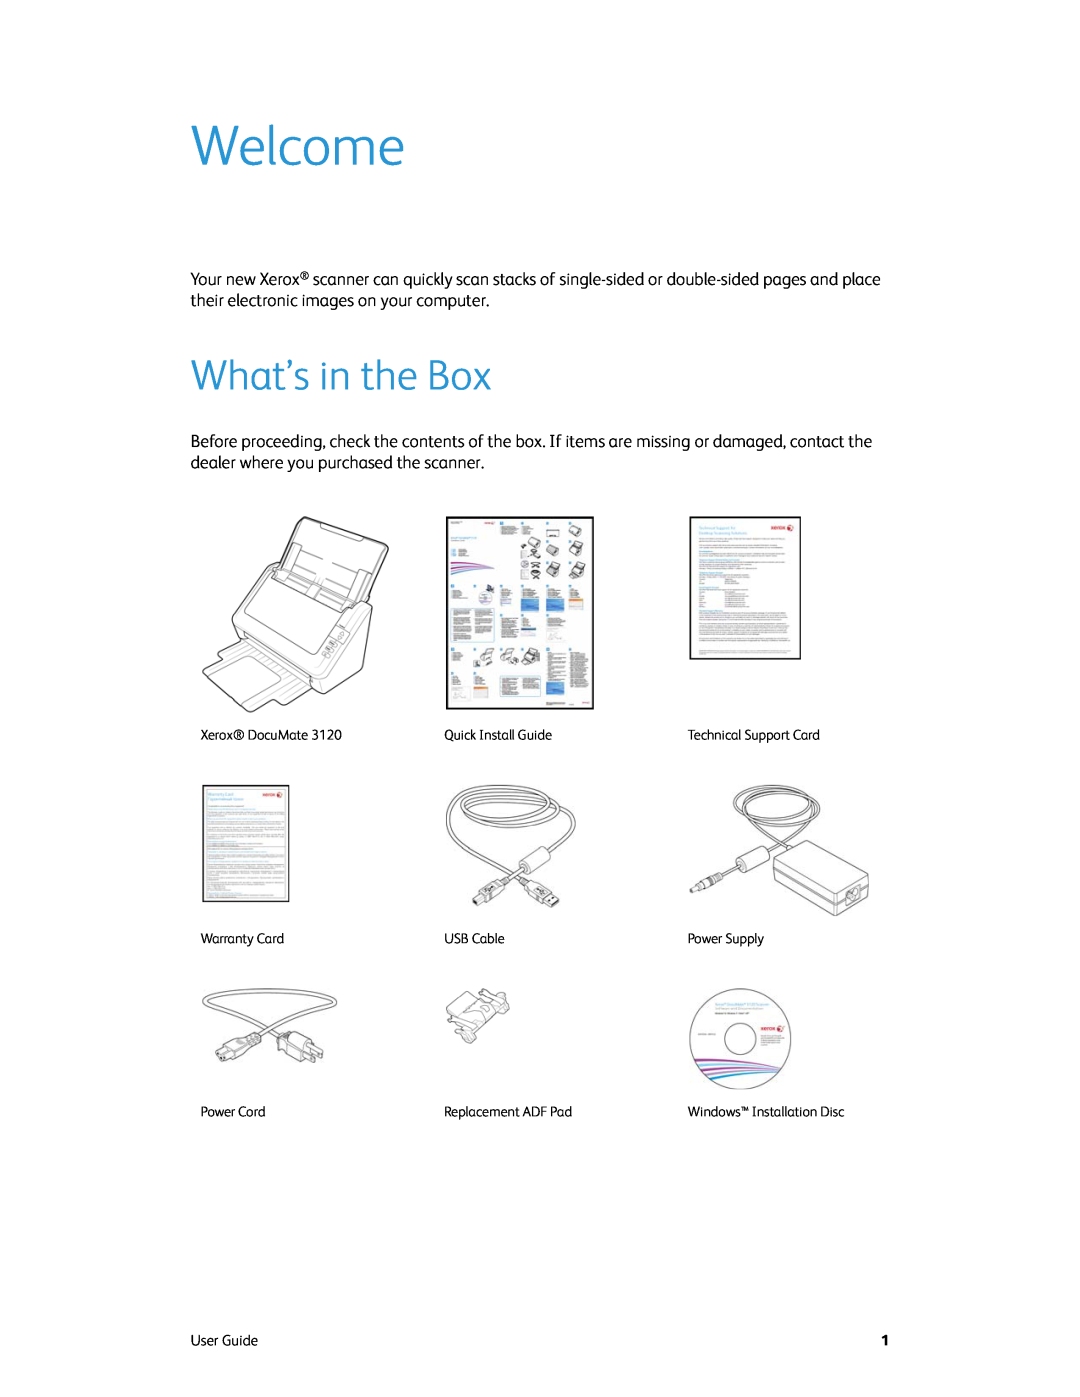 Xerox xerox manual Welcome, What’s in the Box 